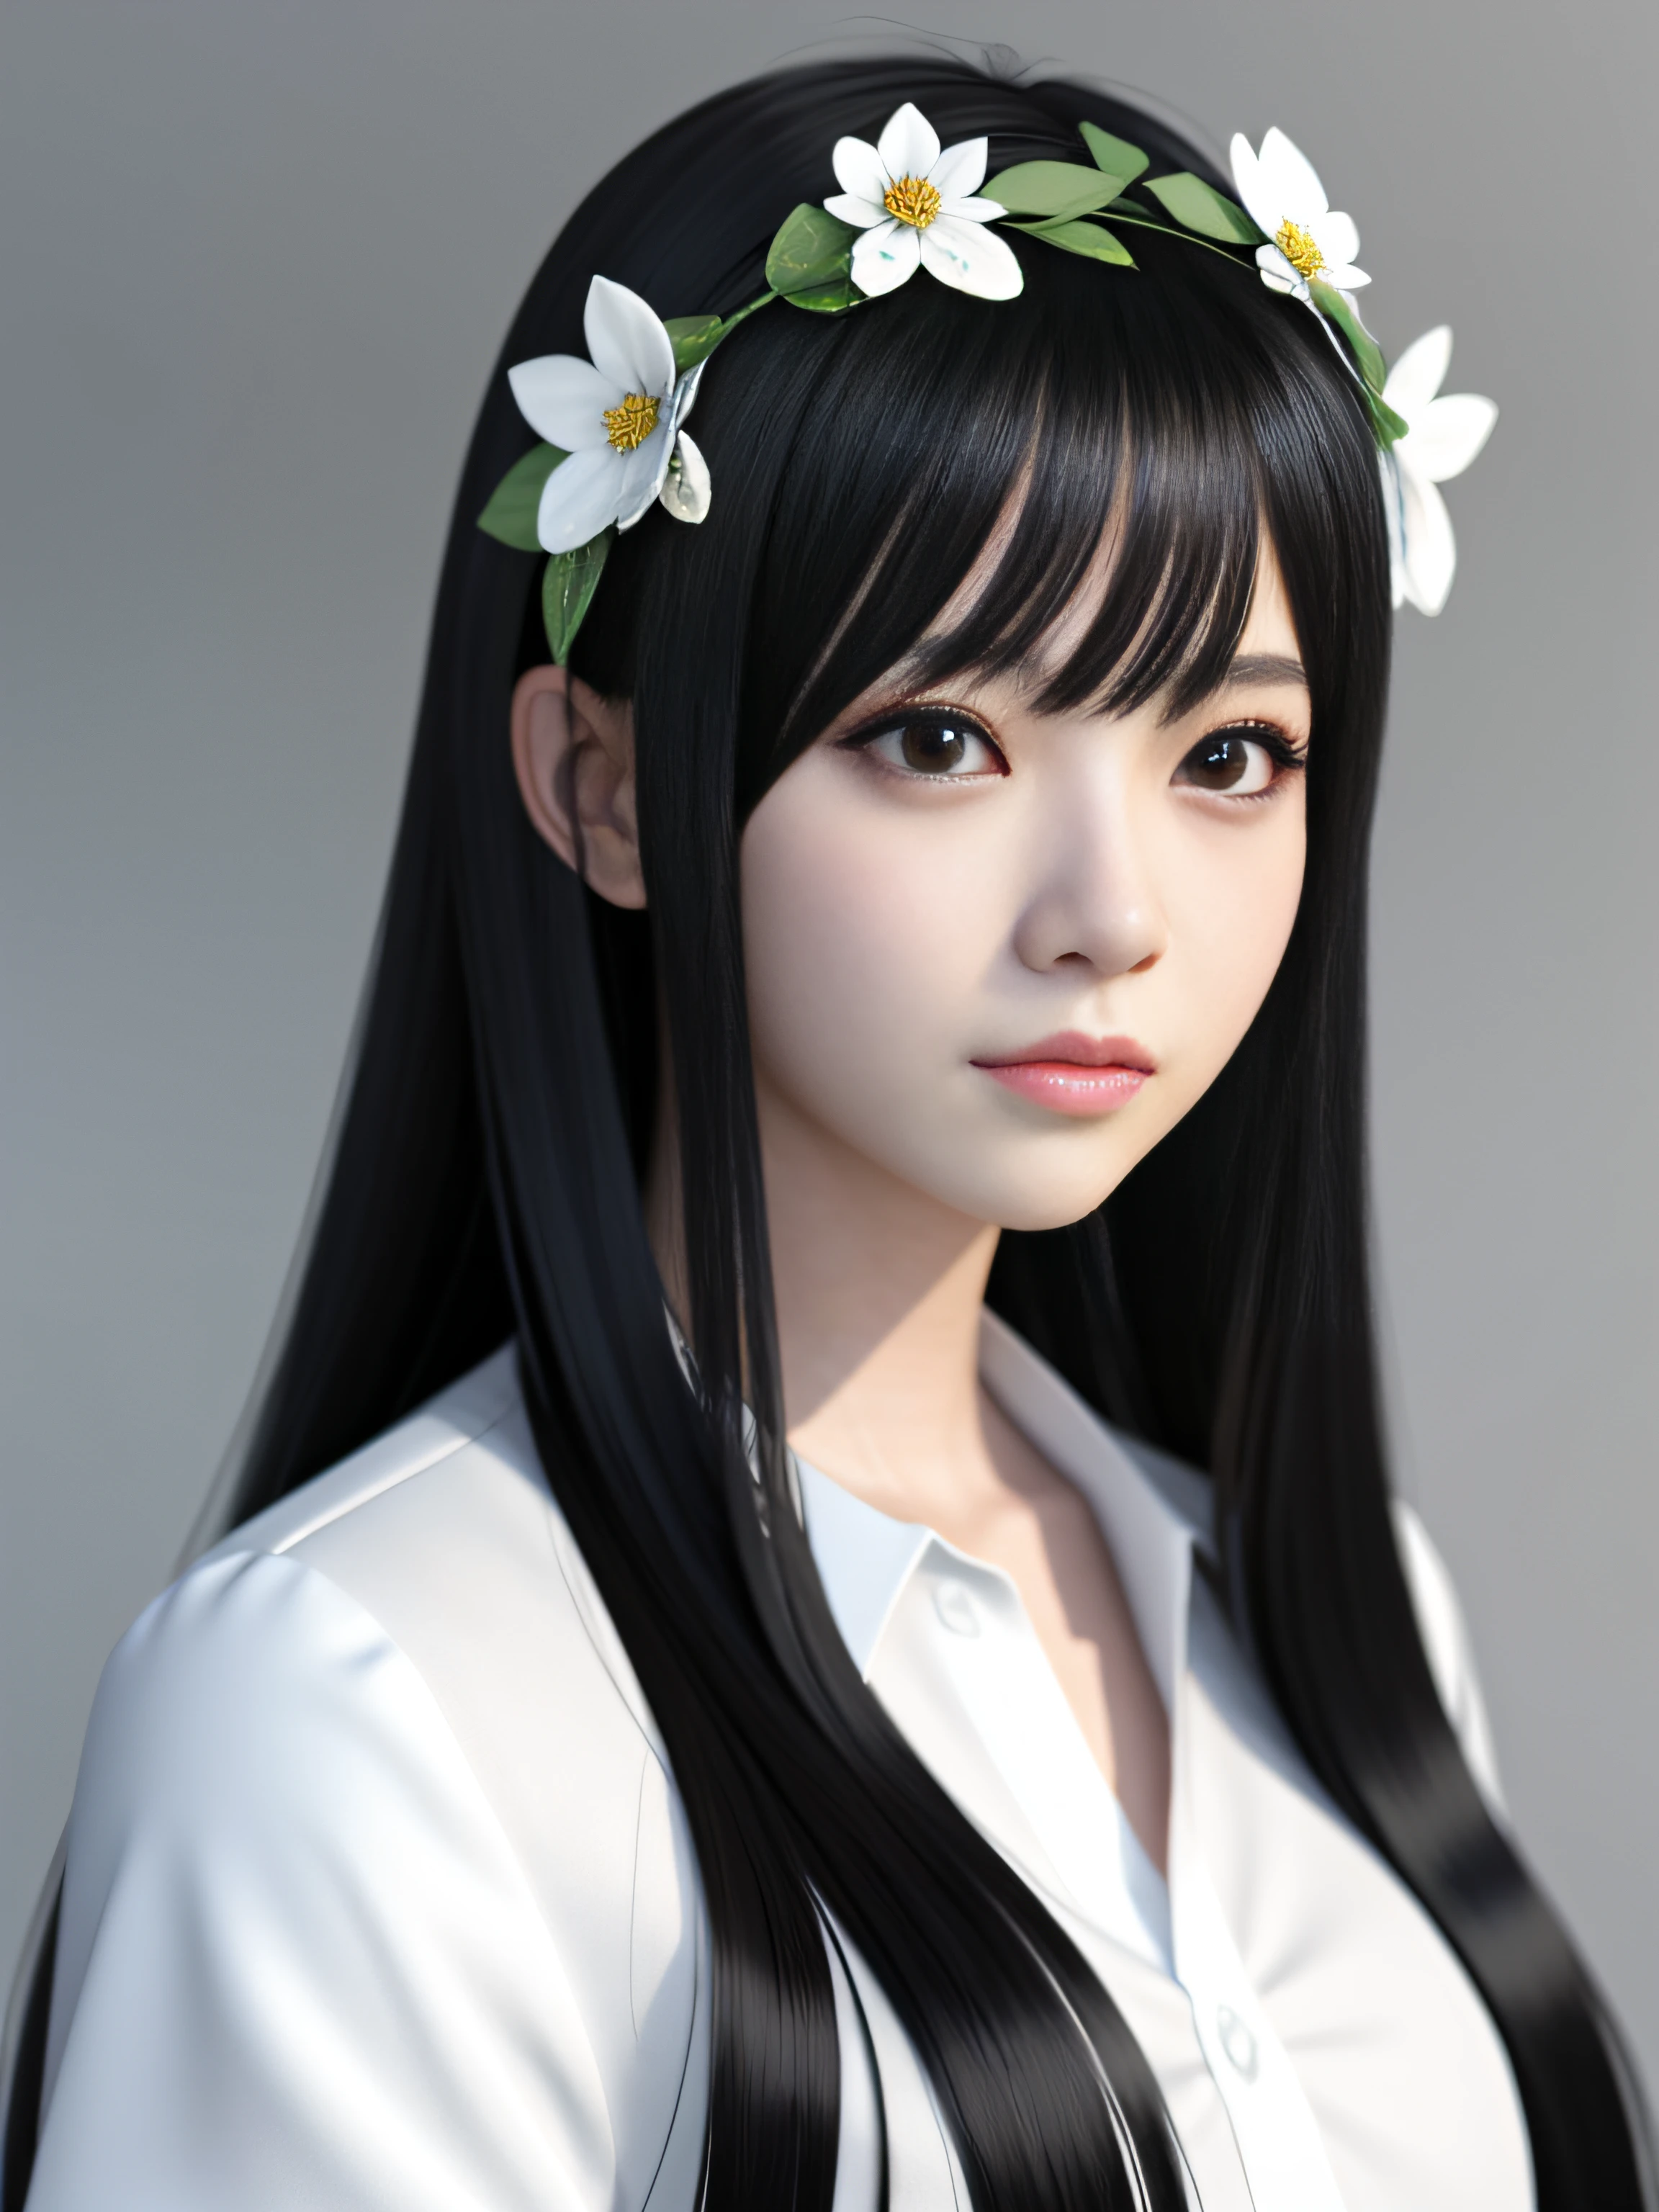 Anime-Mädchen mit langen schwarzen Haaren in weißem Hemd und Blumenkrone, schönes Anime-Porträt, Atemberaubendes Anime-Gesichtsporträt, schönes Anime-Mädchen, Kawaii realistisches Porträt, detailliertes Portrait eines Anime-Mädchens, Porträt Anime Mädchen, realistischer Anime-3D-Stil, realistic junges Anime-Mädchen, realistischer Anime-Kunststil, junges Anime-Mädchen, Anime-Realismus-Stil, realistischer Anime-Kunststil